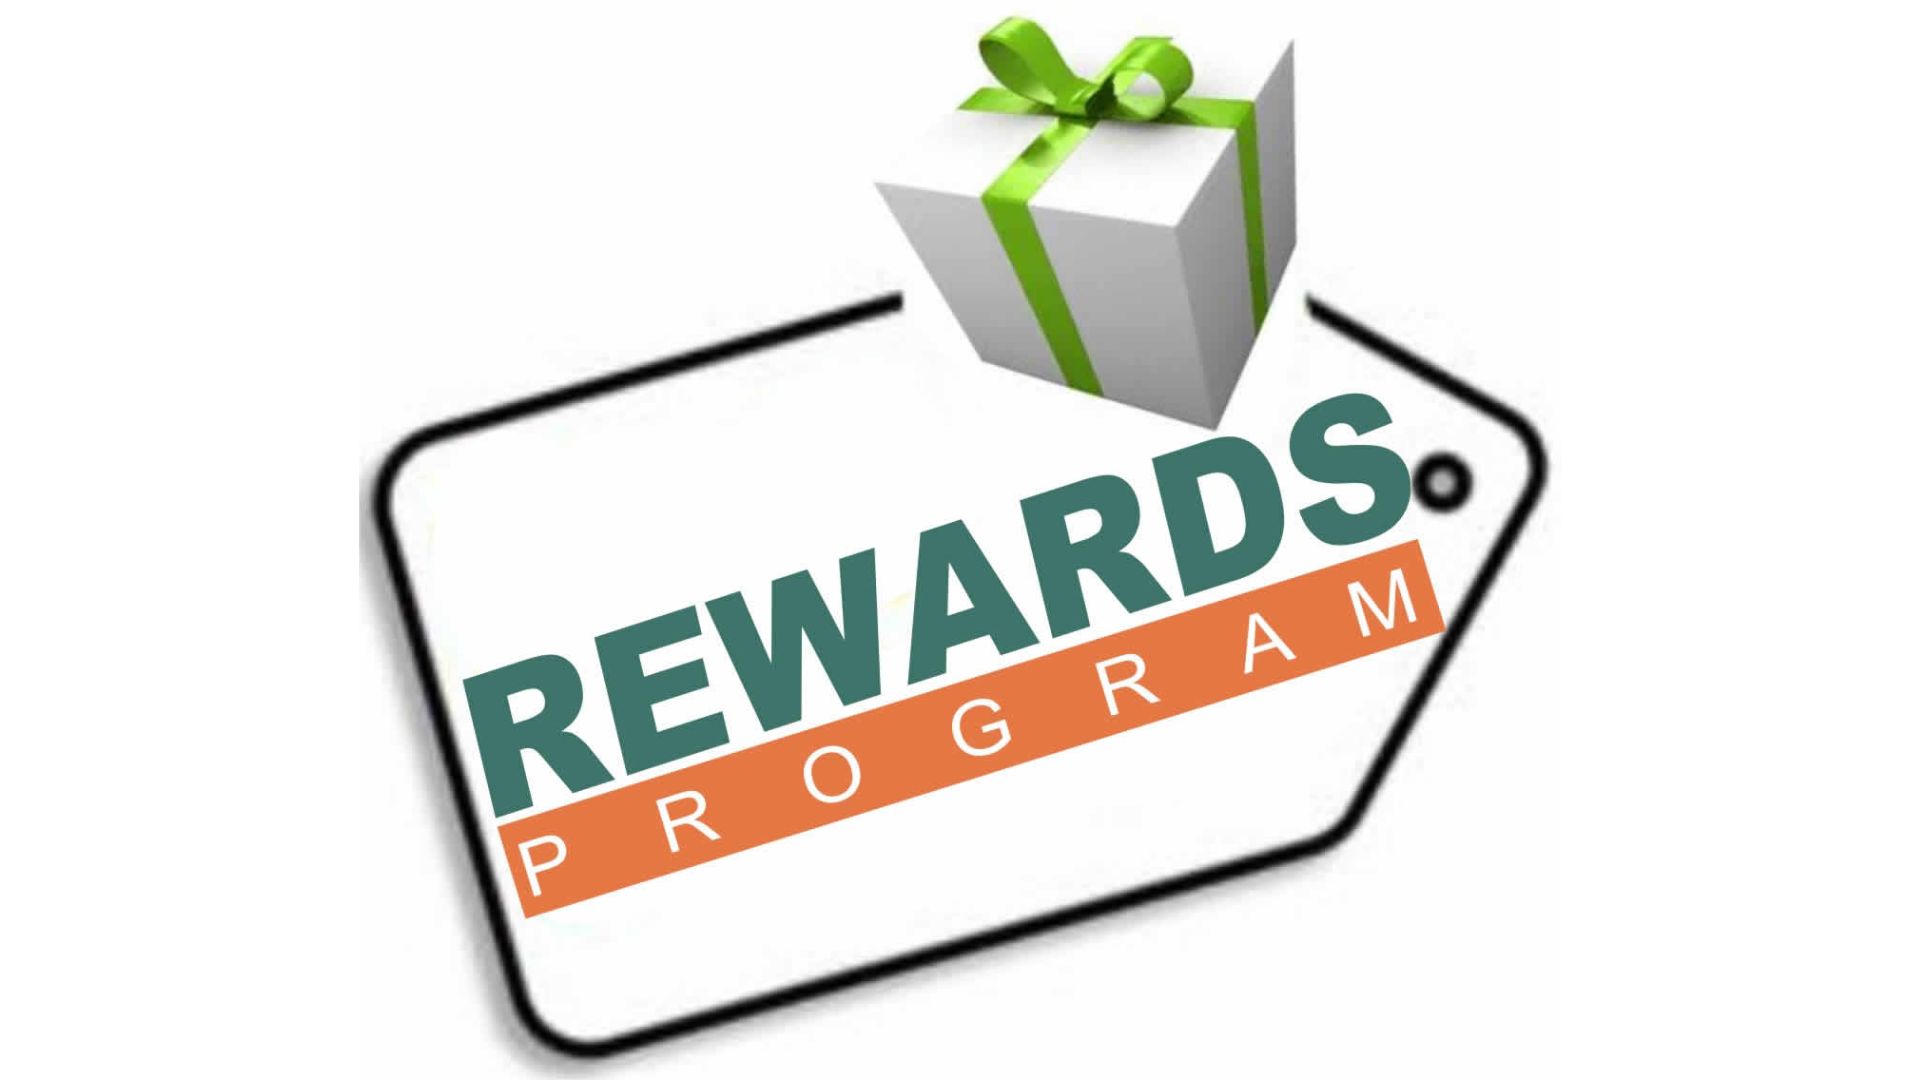 No Rewards Program